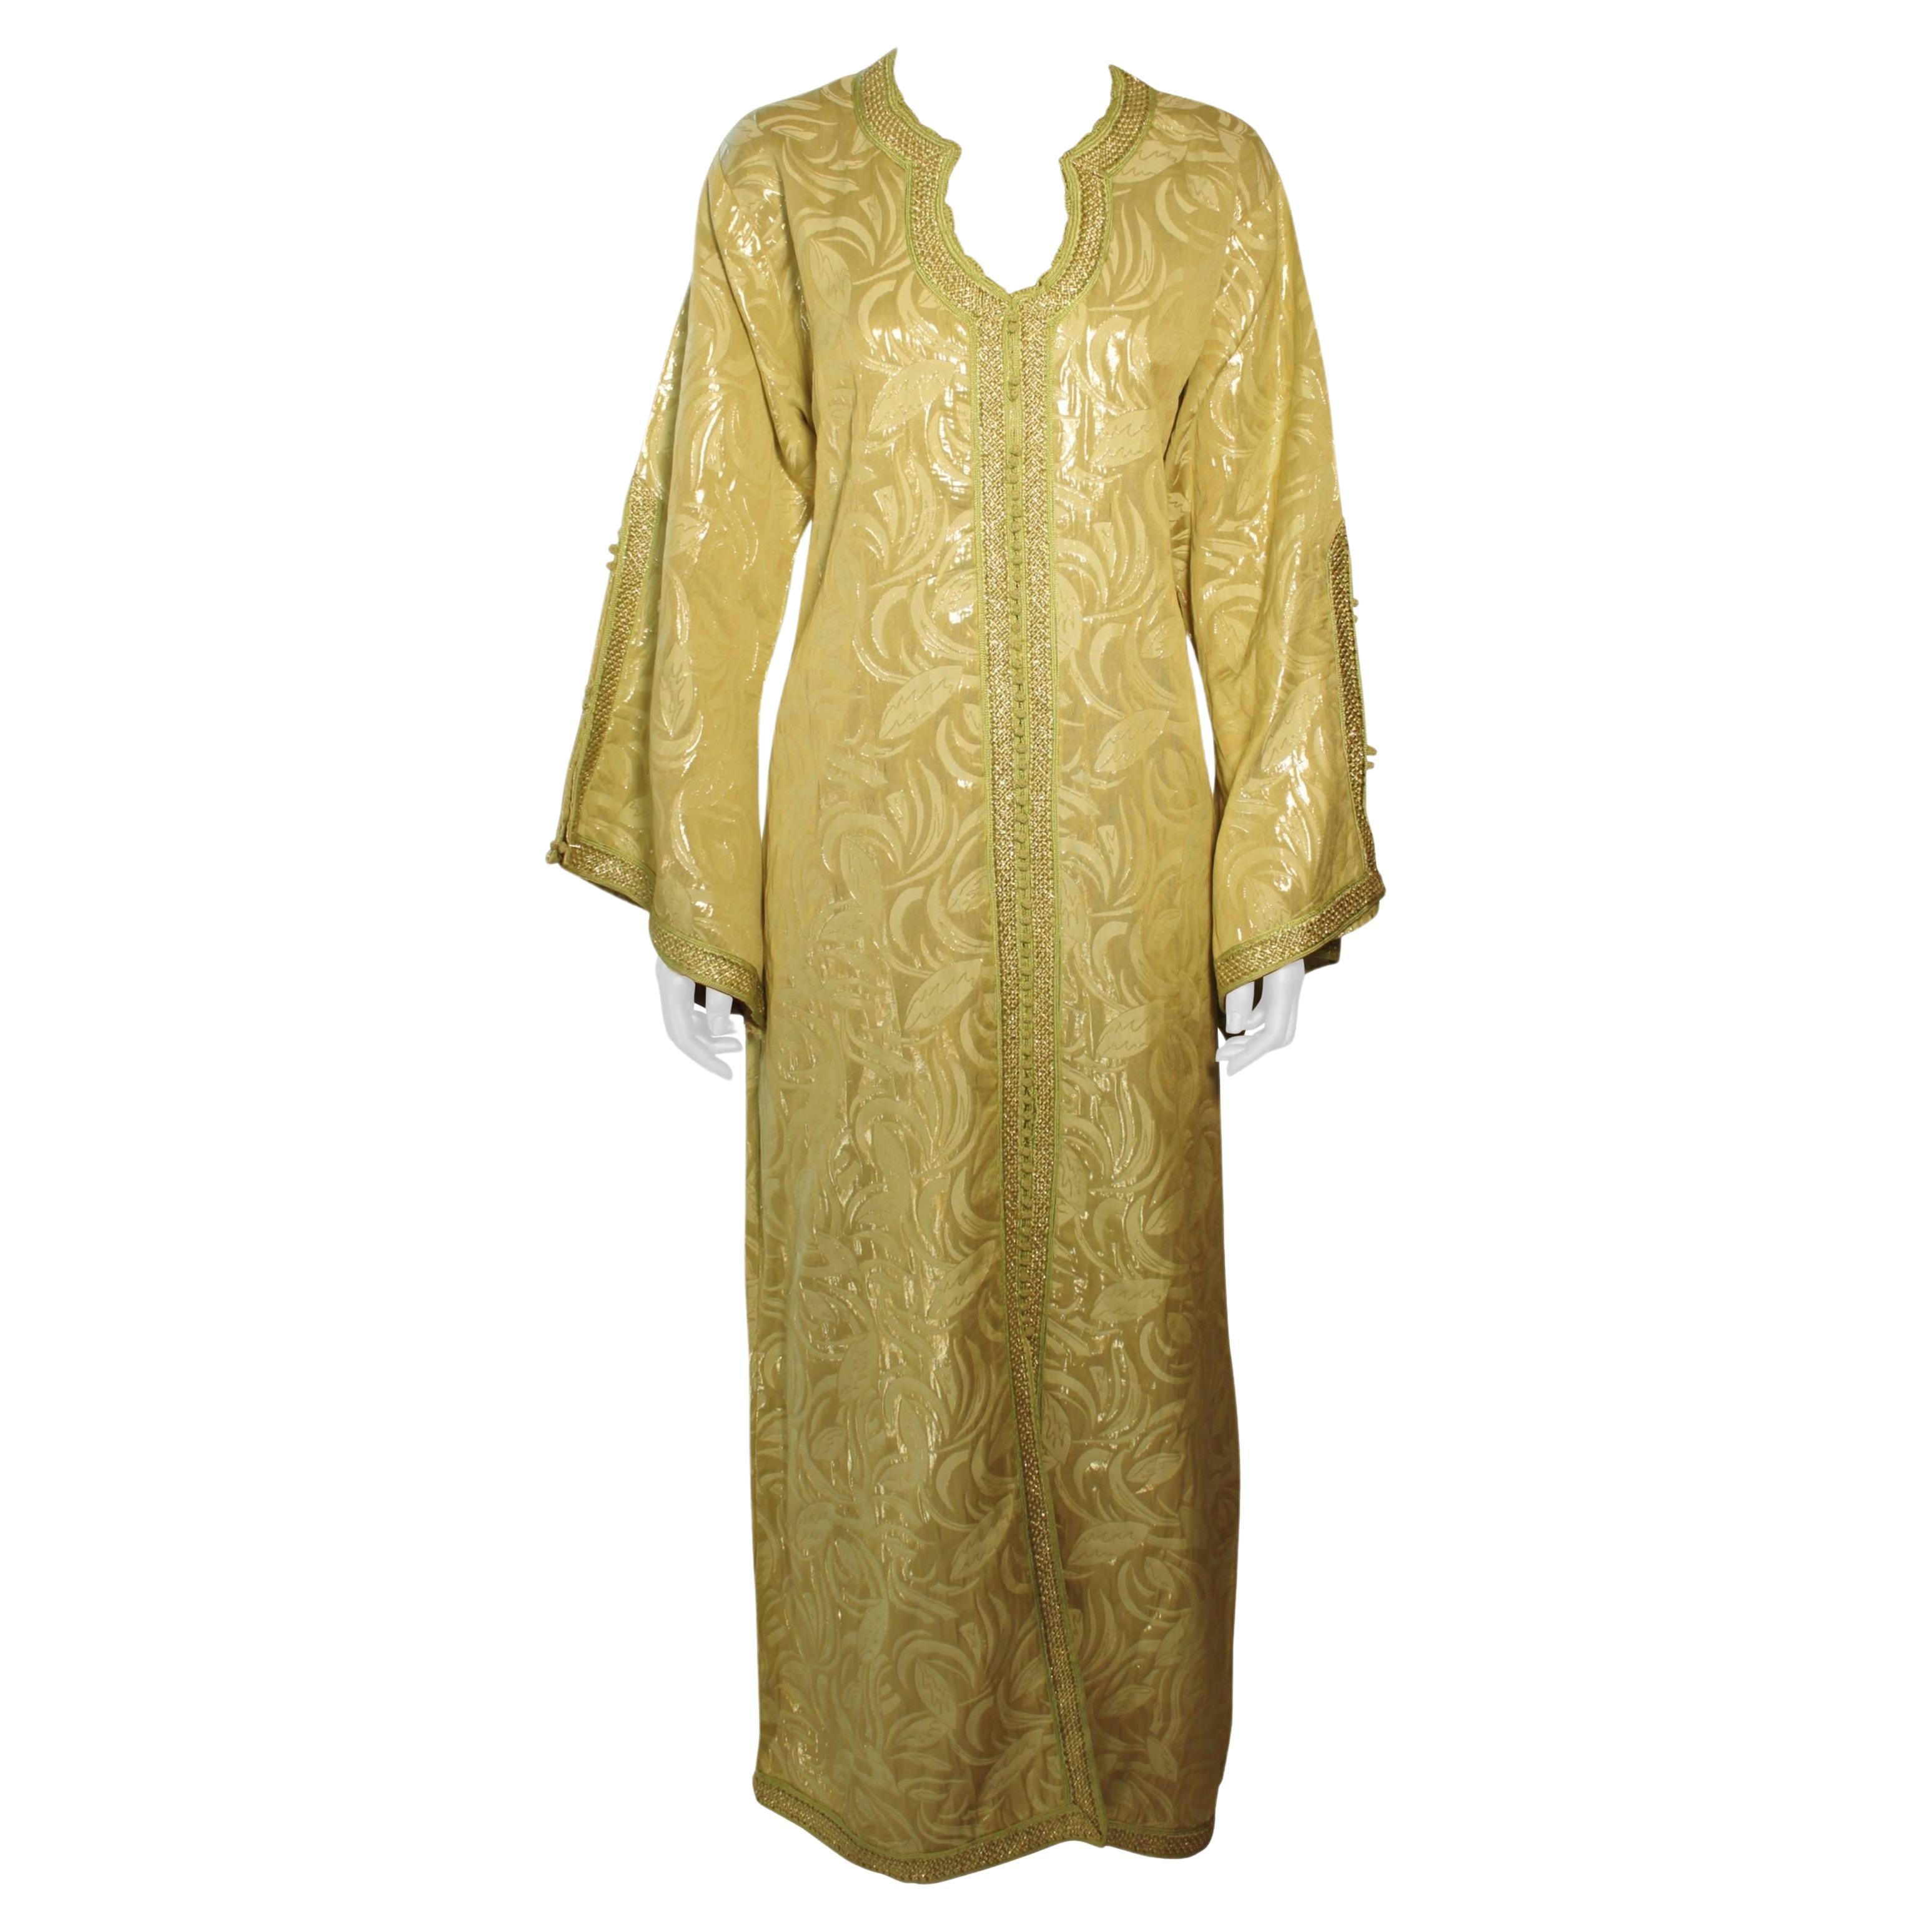 Robe caftan mauresque marocaine longue en brocart doré - Caftan - Taille M à L en vente